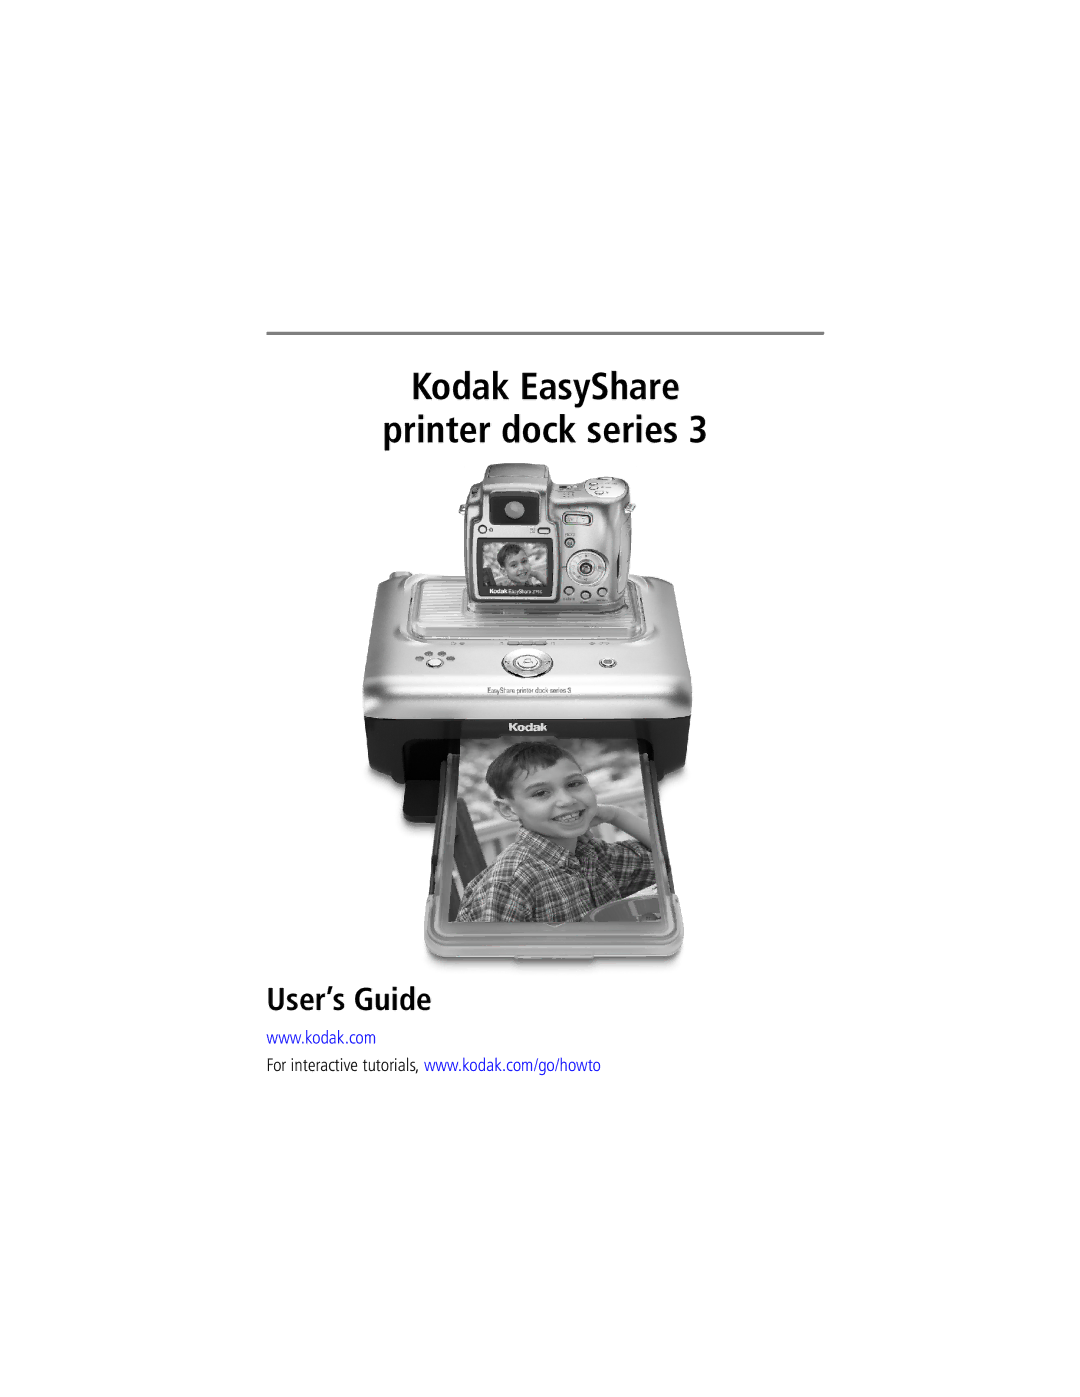 Kodak Series 3 manual Kodak EasyShare Printer dock series, User’s Guide 